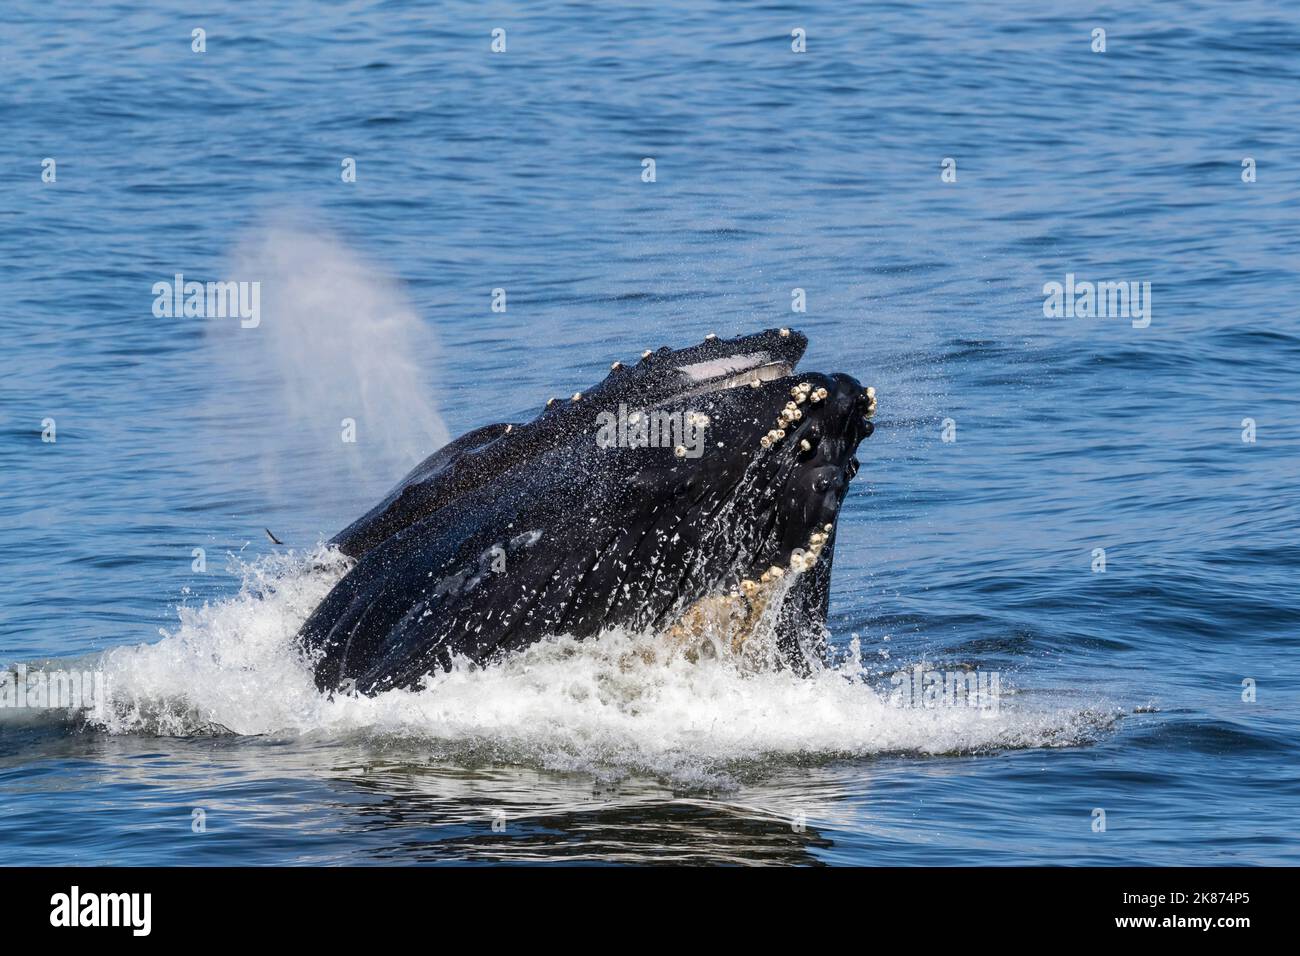 La baleine à bosse adulte (Megaptera novaeangliae) se nourrissant en fente dans le sanctuaire marin national de la baie de Monterey, Californie, États-Unis d'Amérique Banque D'Images